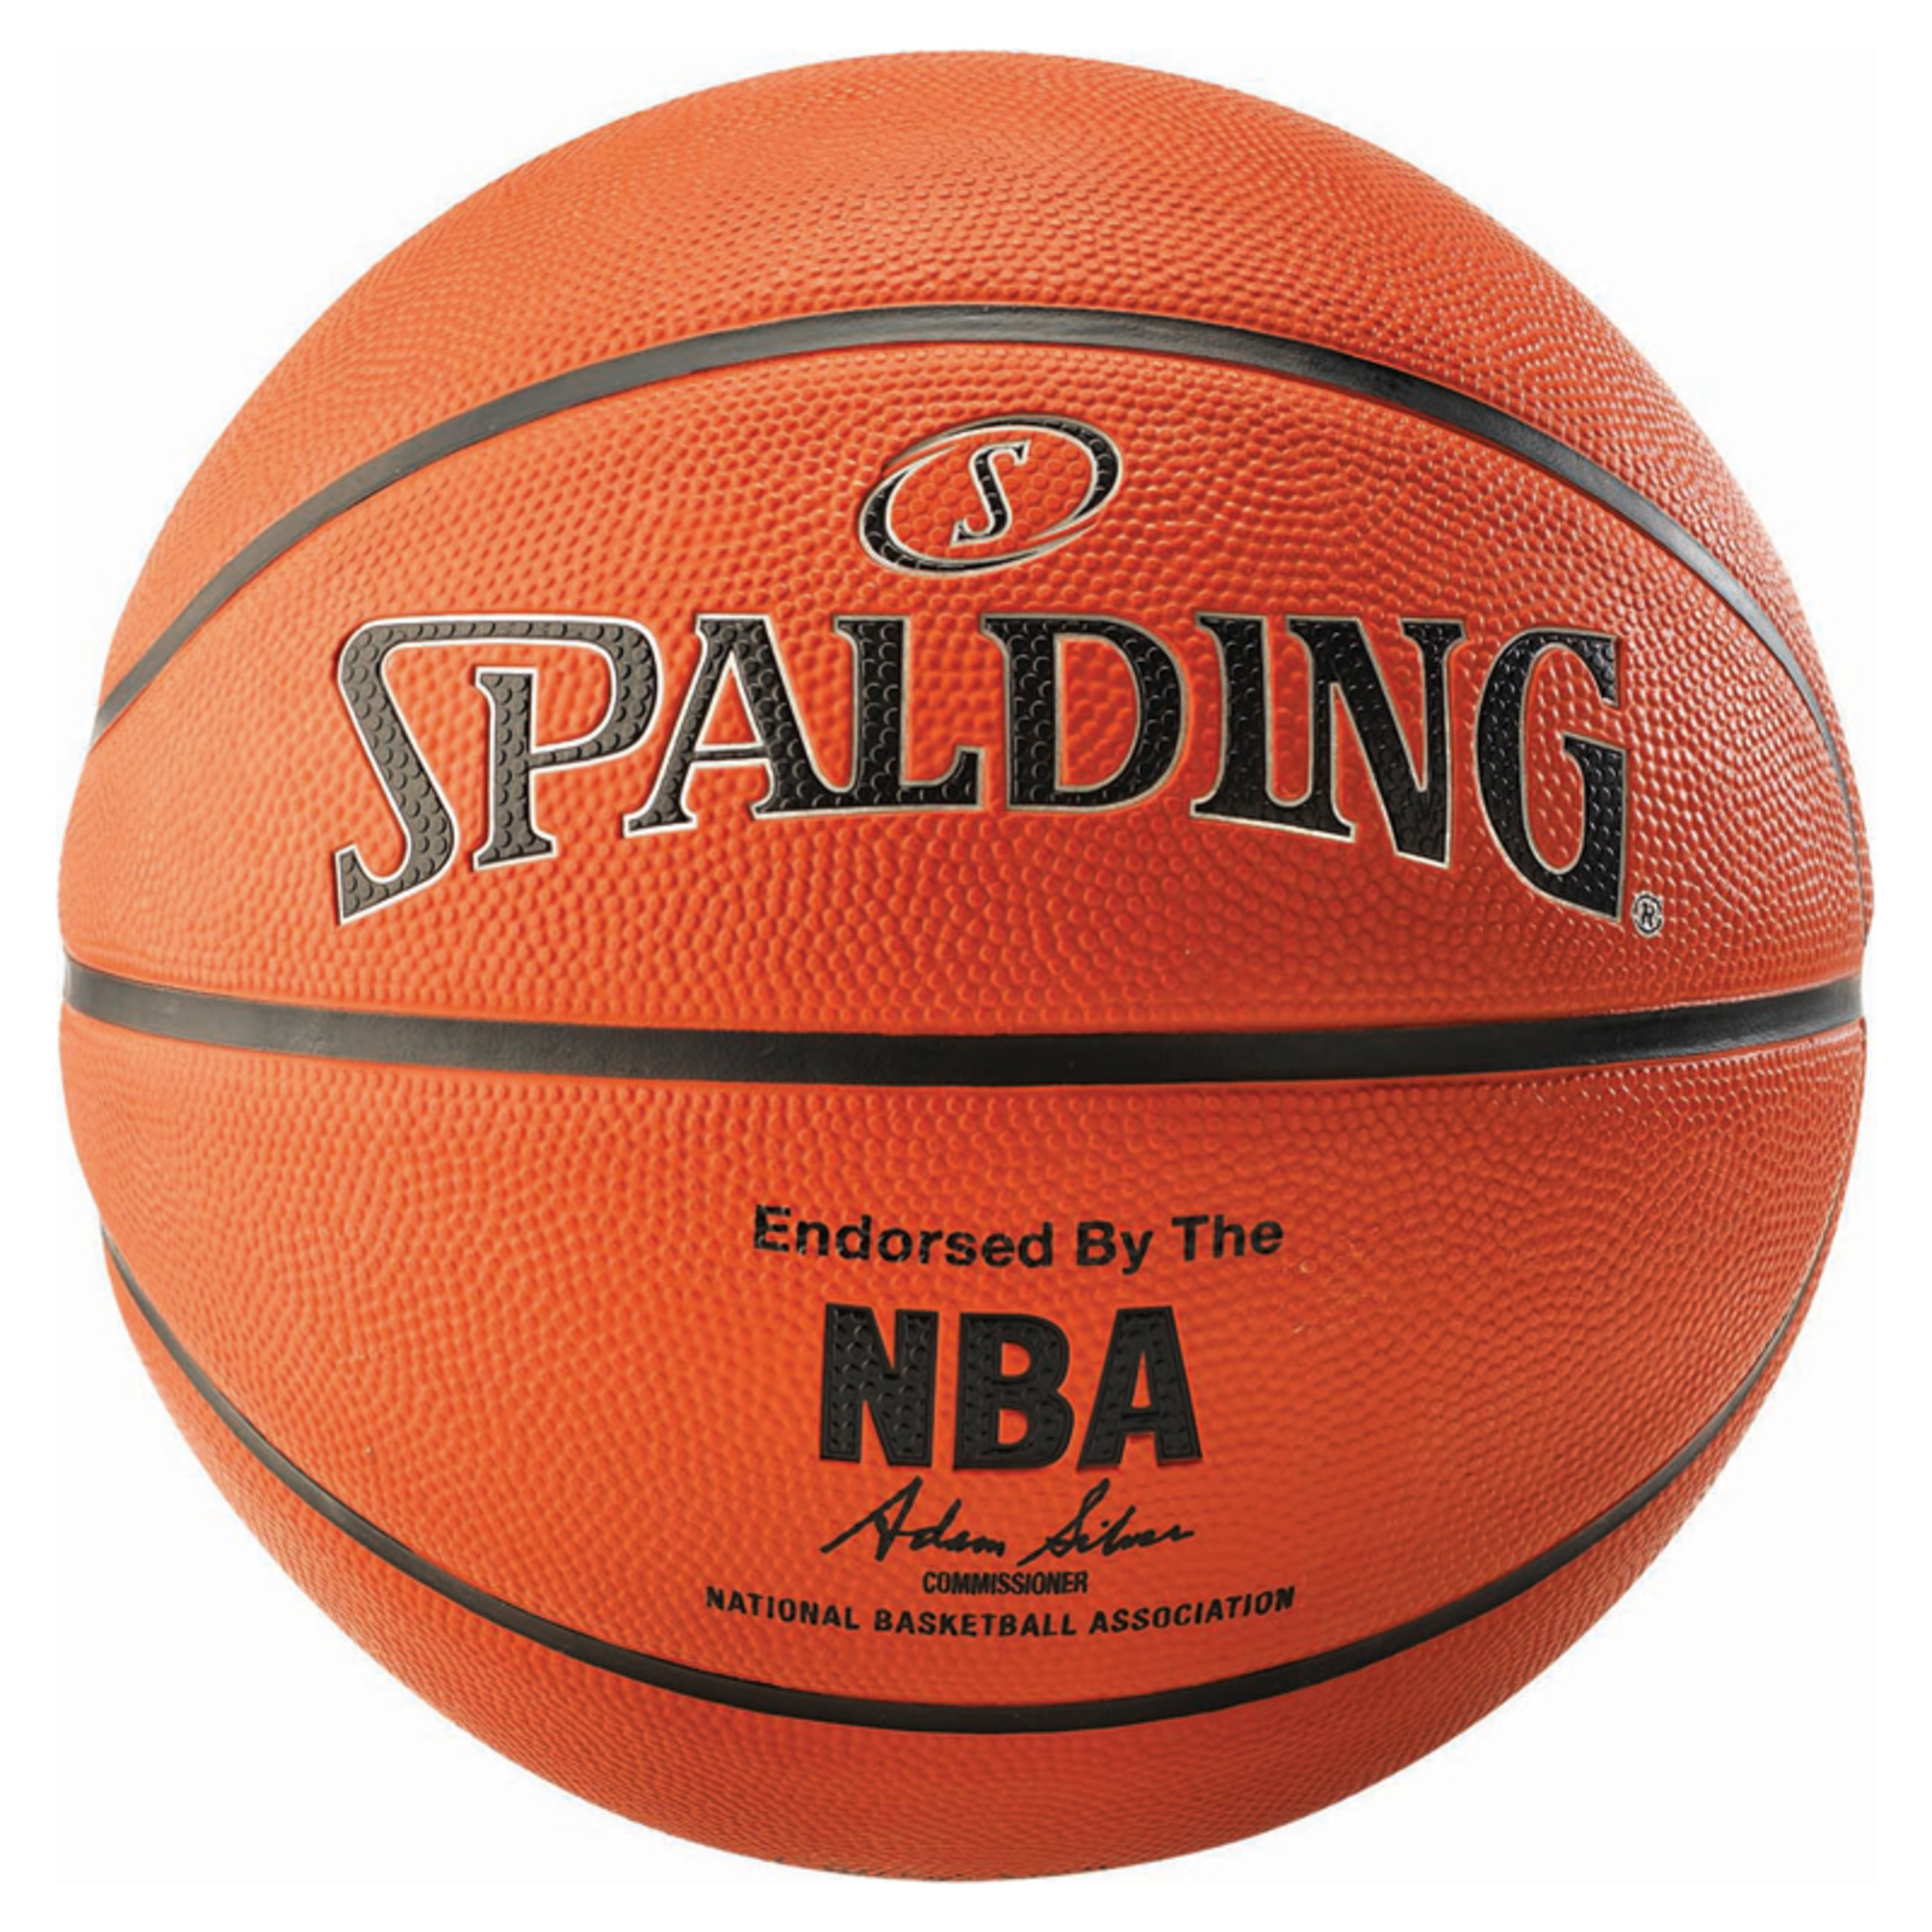 Balón De Baloncesto Spalding Nba Silver Outdoor Sz.7